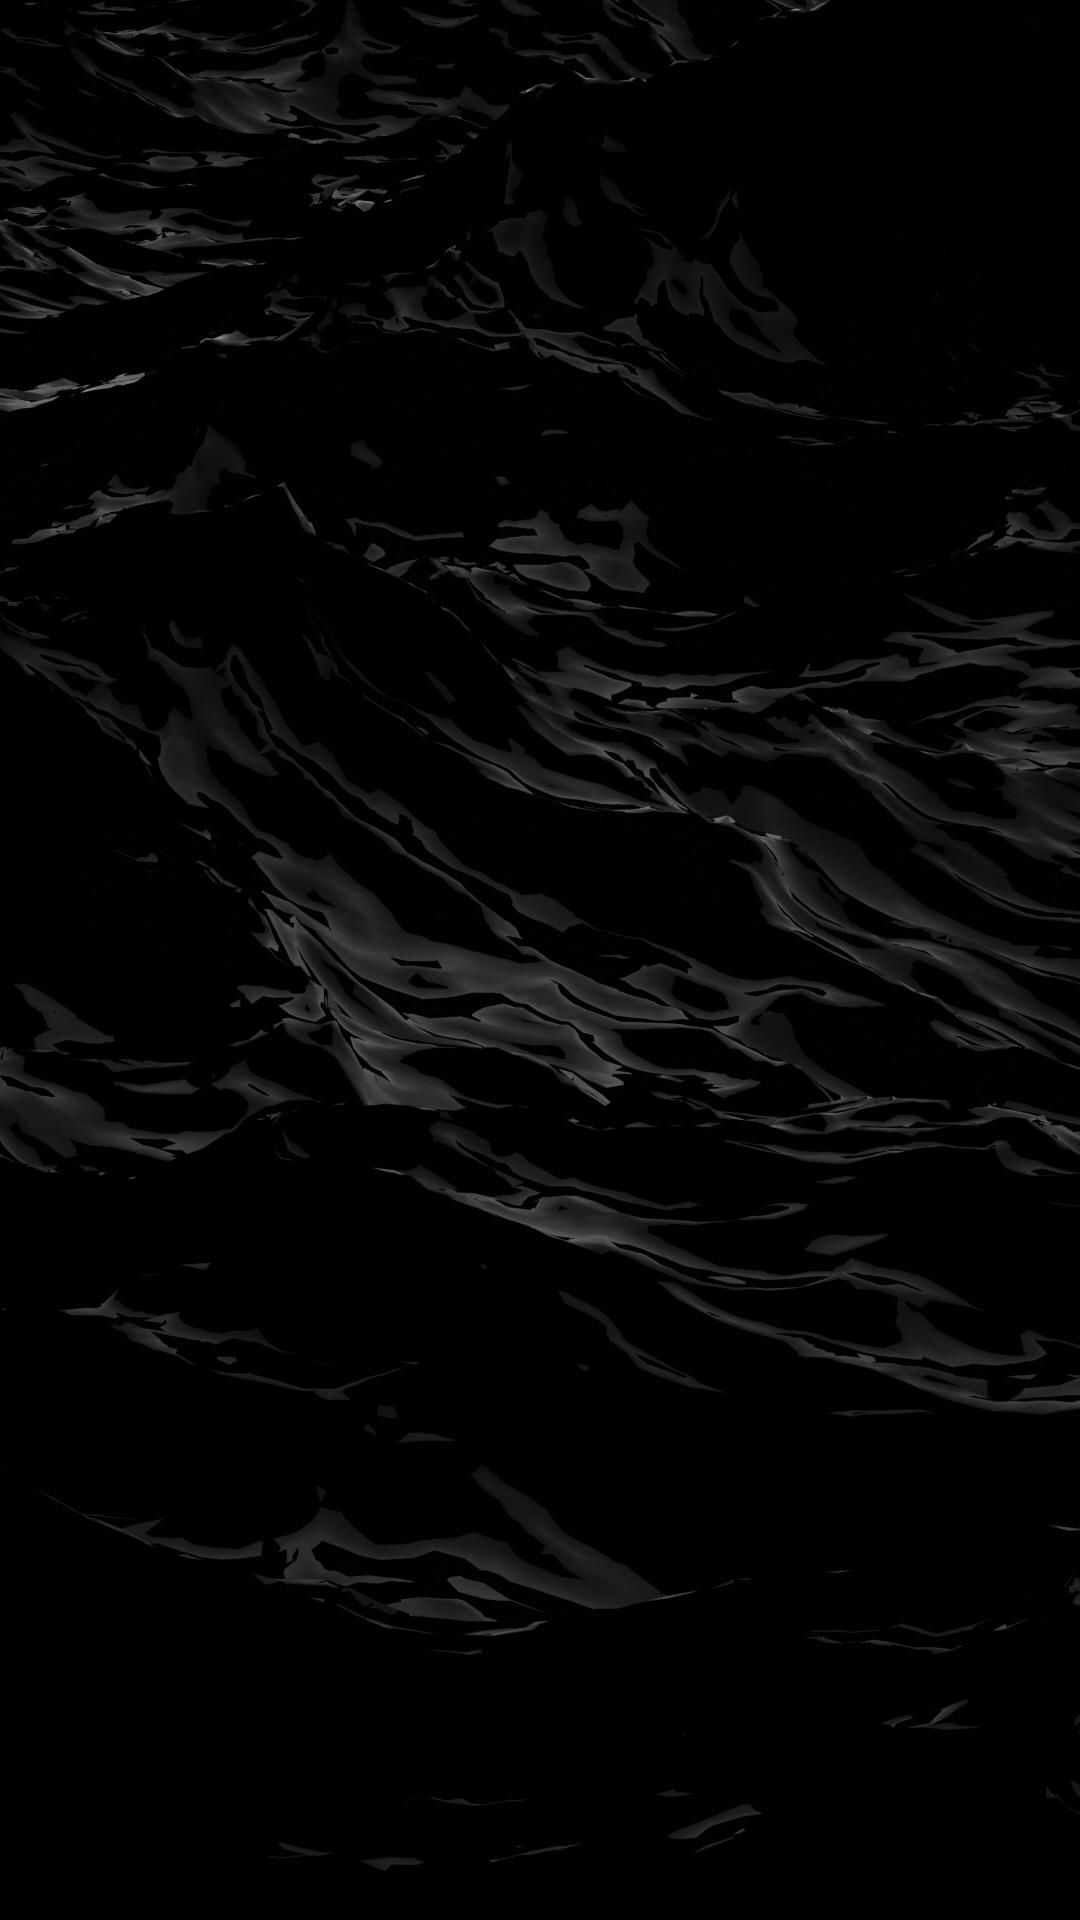 Black Wave Wallpaper Free Black Wave Background